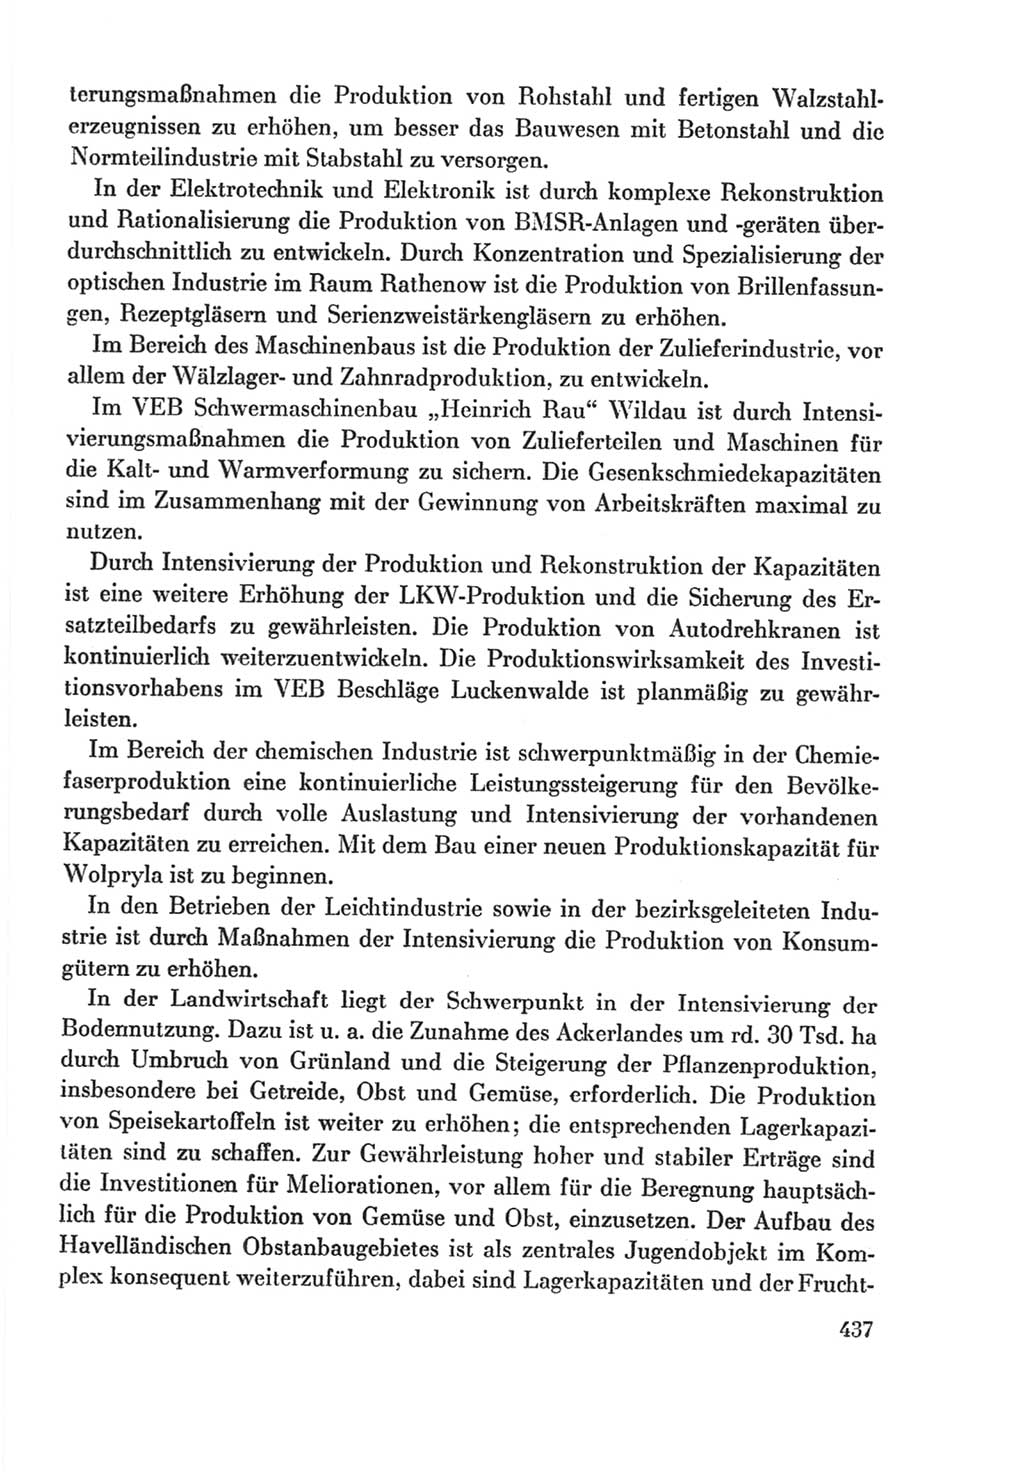 Protokoll der Verhandlungen des Ⅸ. Parteitages der Sozialistischen Einheitspartei Deutschlands (SED) [Deutsche Demokratische Republik (DDR)] 1976, Band 2, Seite 437 (Prot. Verh. Ⅸ. PT SED DDR 1976, Bd. 2, S. 437)